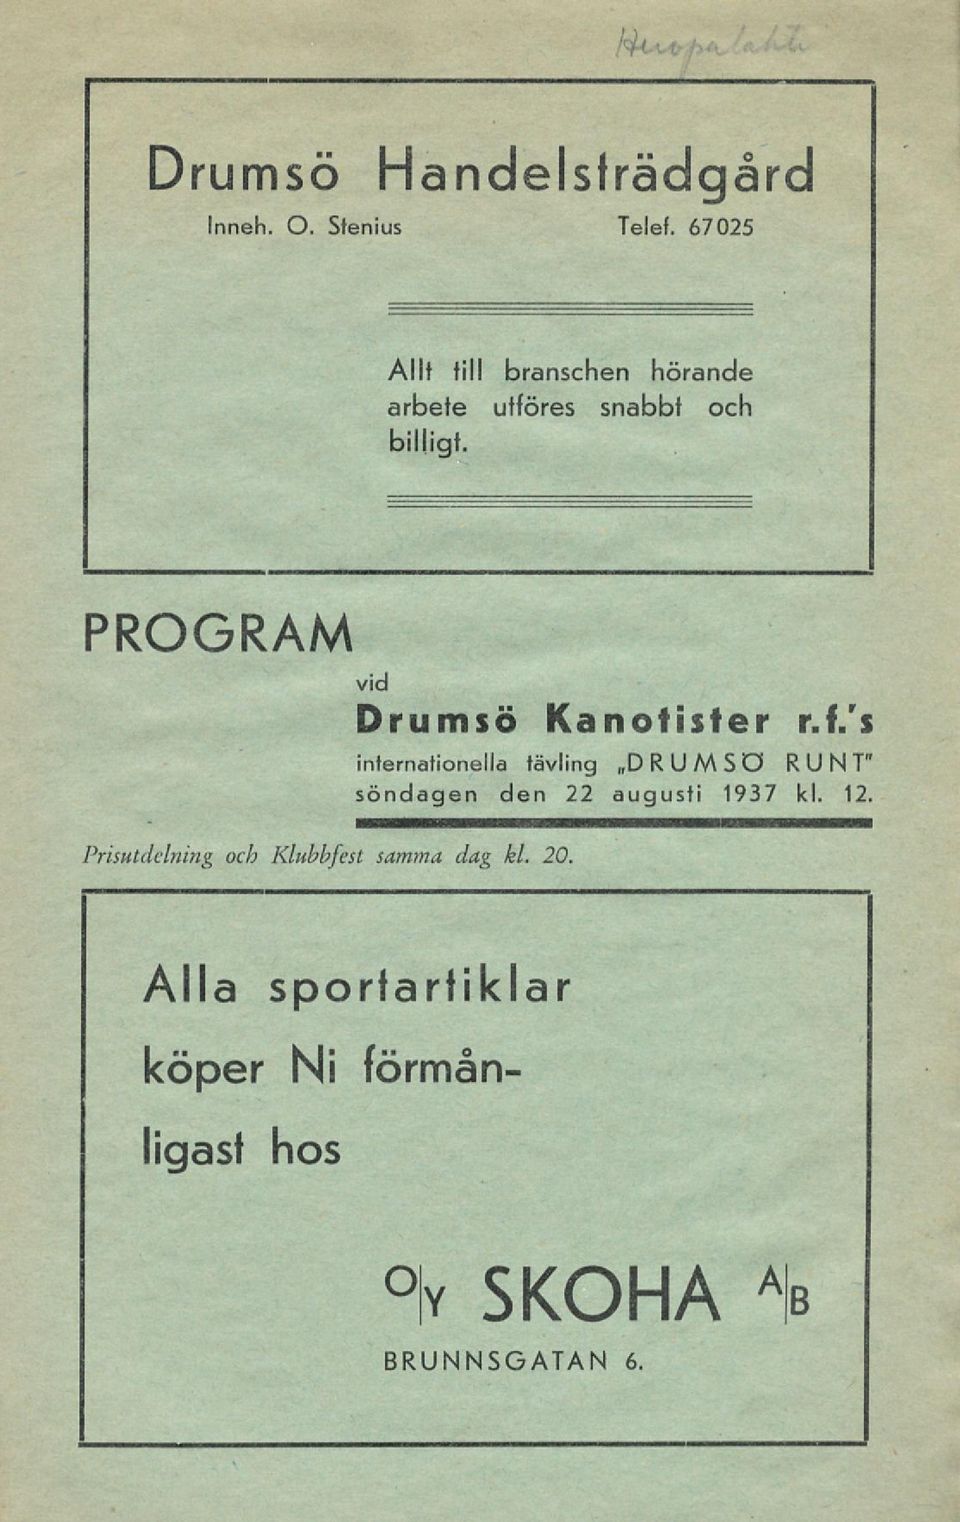 PROGRAM vid Drumsö Kanotister r.f/s Prisutdelning och Klubbfest samma, dag kl. 20.